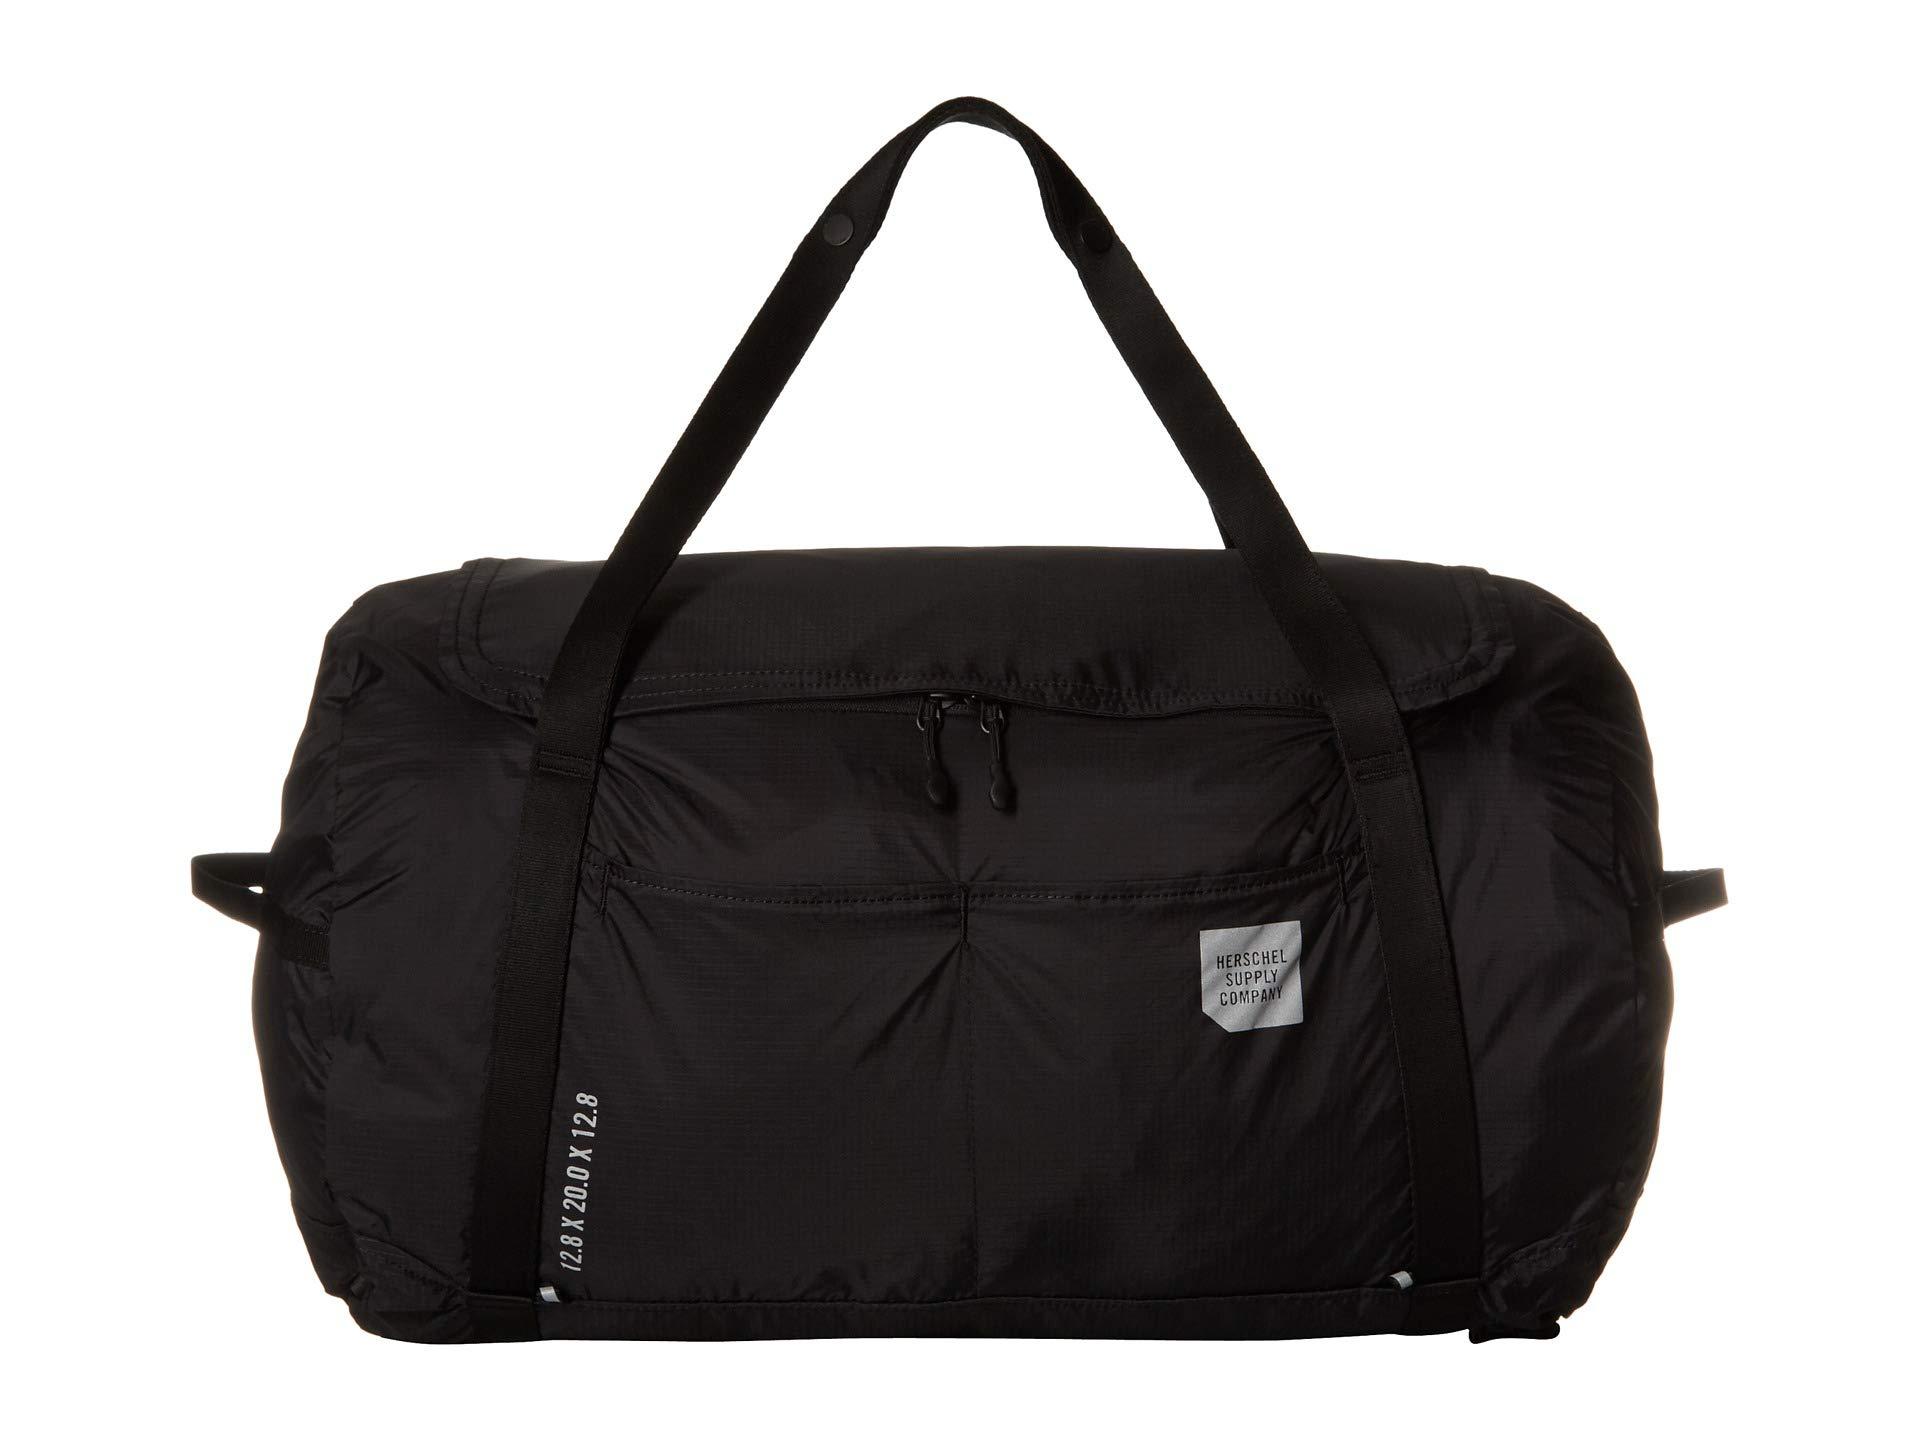 Lyst - Herschel Supply Co. Ultralight Duffel (black) Duffel Bags in Black for Men